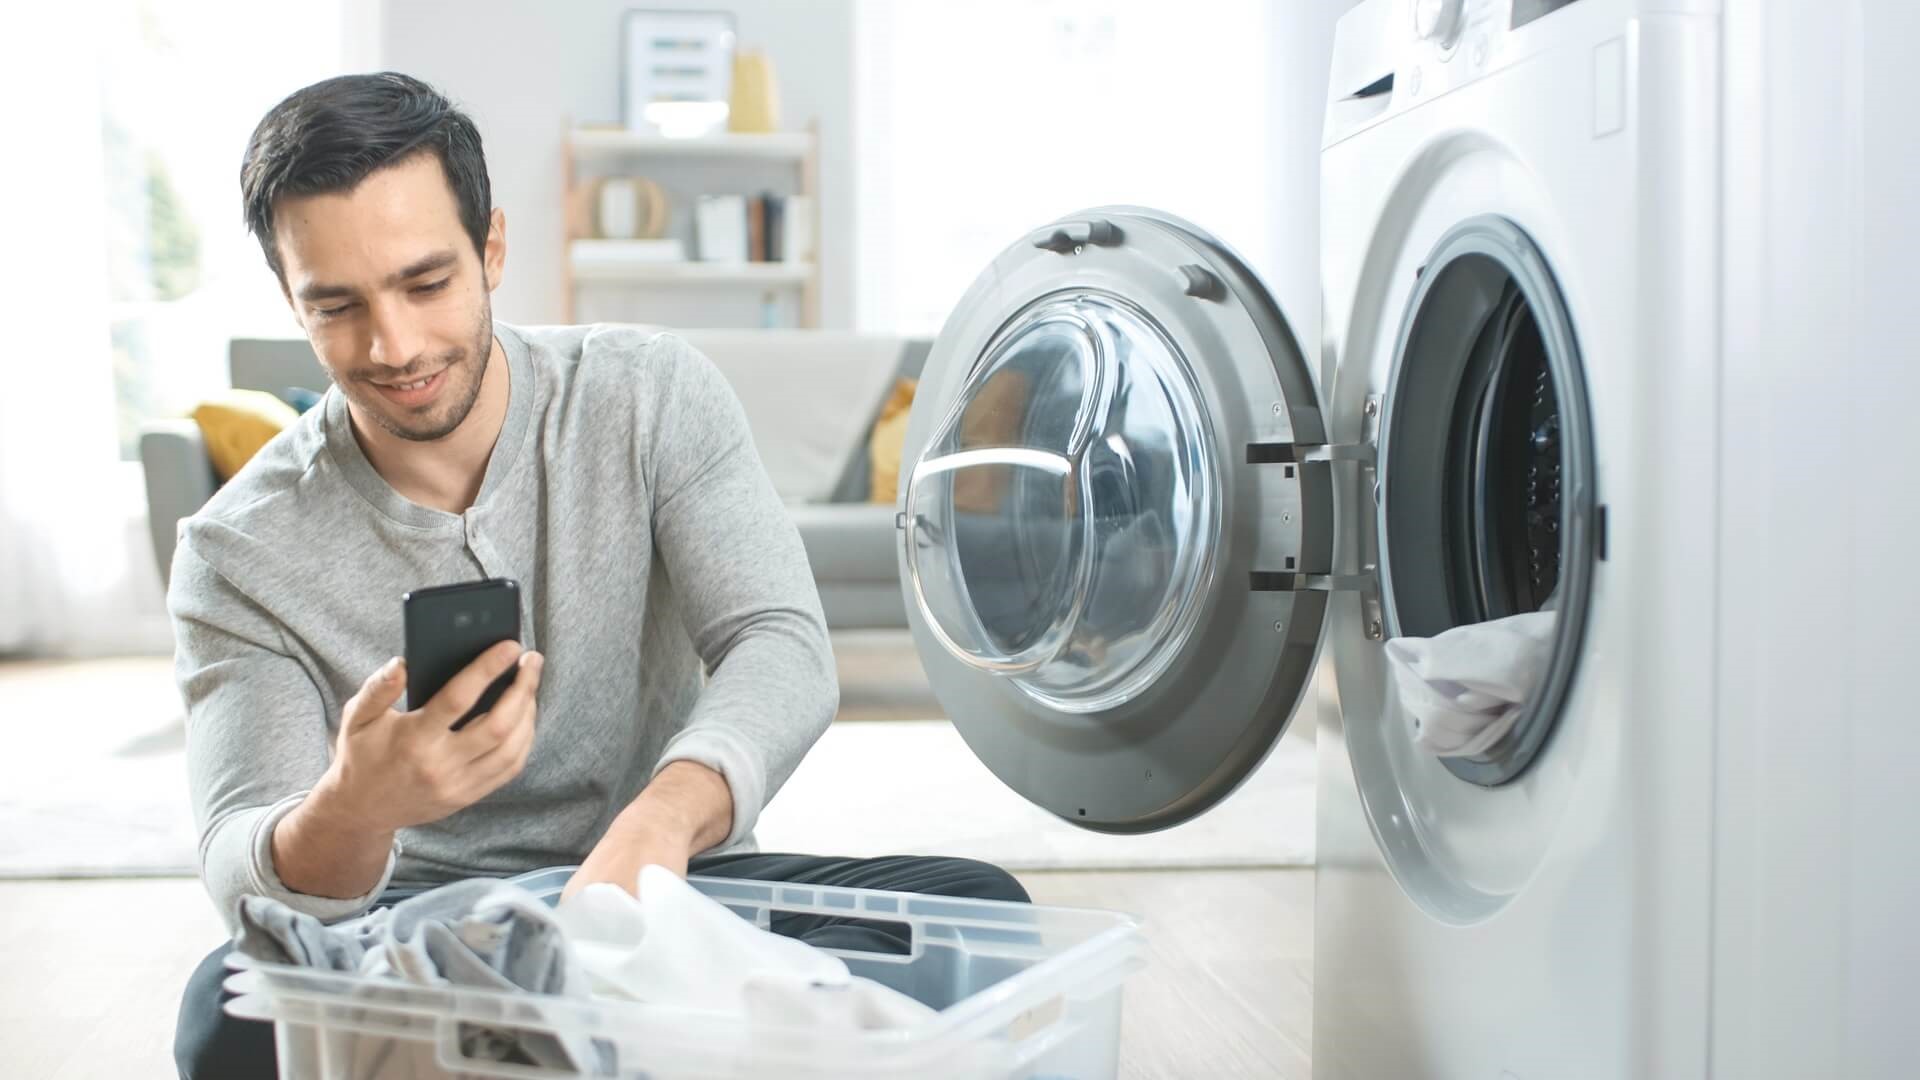 Man kijkt op zijn mobiel terwijl hij de was in de wasmachine doet | Goedkoopste gas elektra